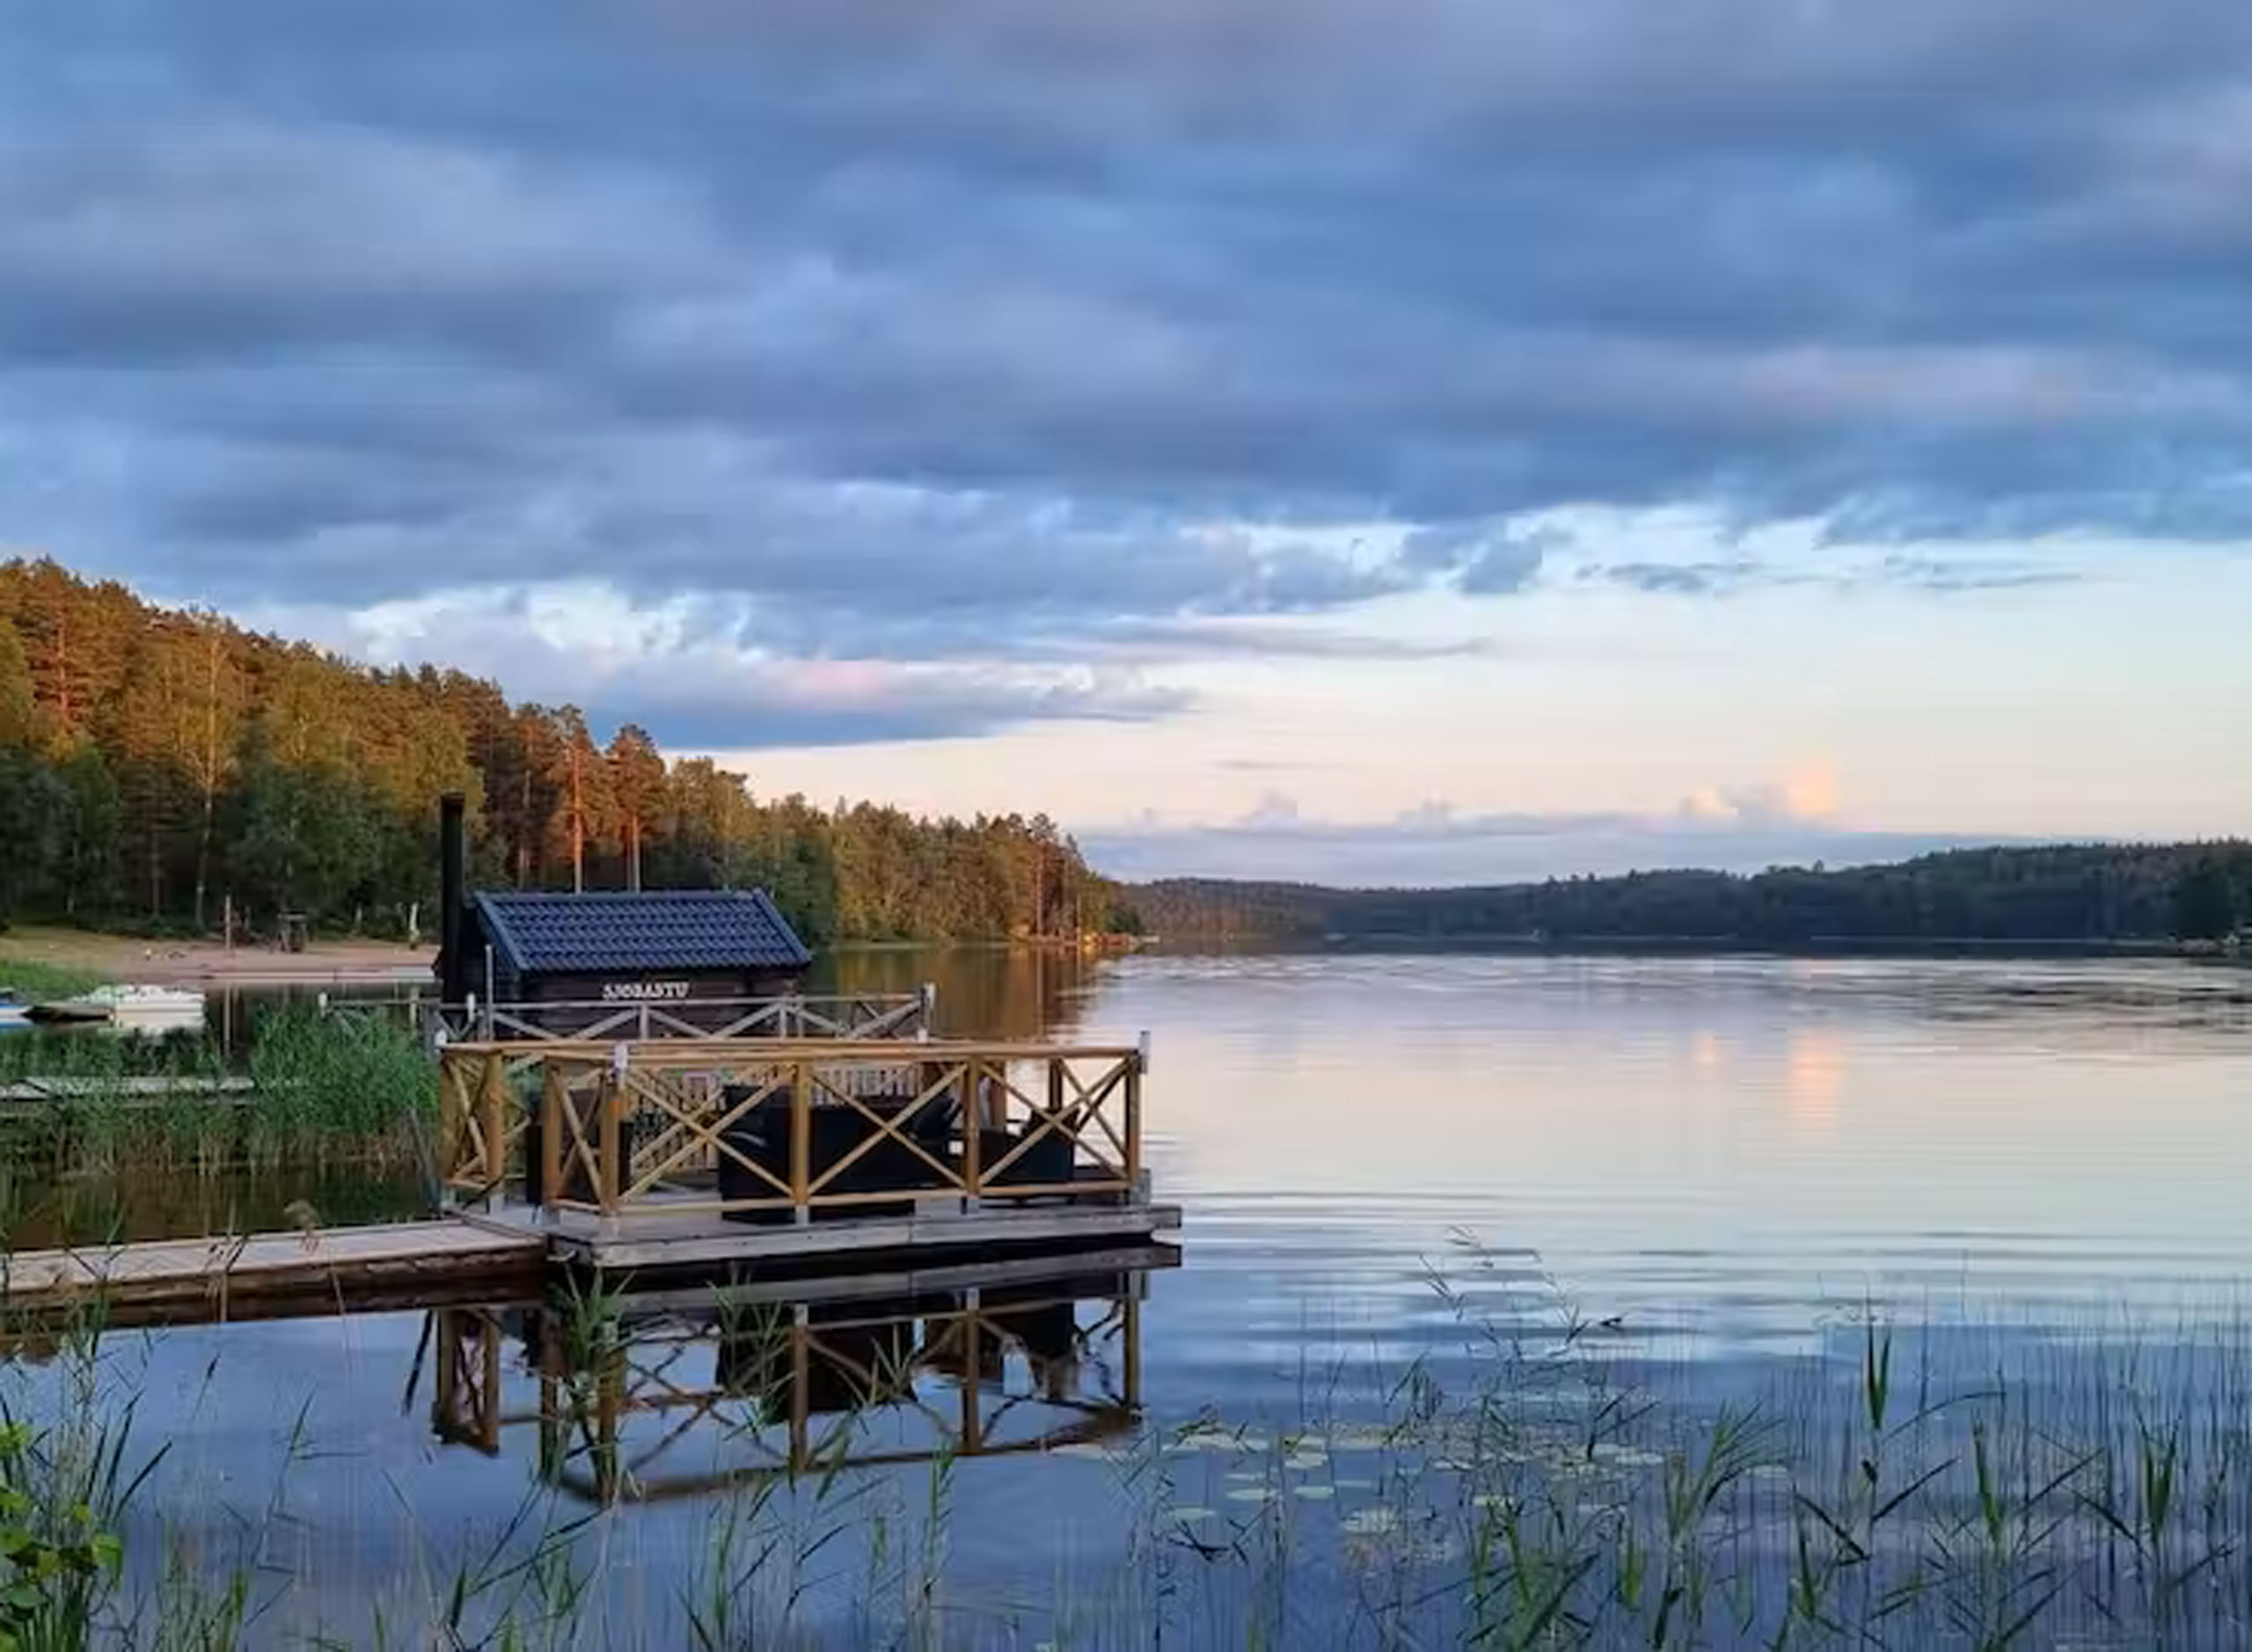 Vimmerby Camping ligger smukt ved søen Nossen.